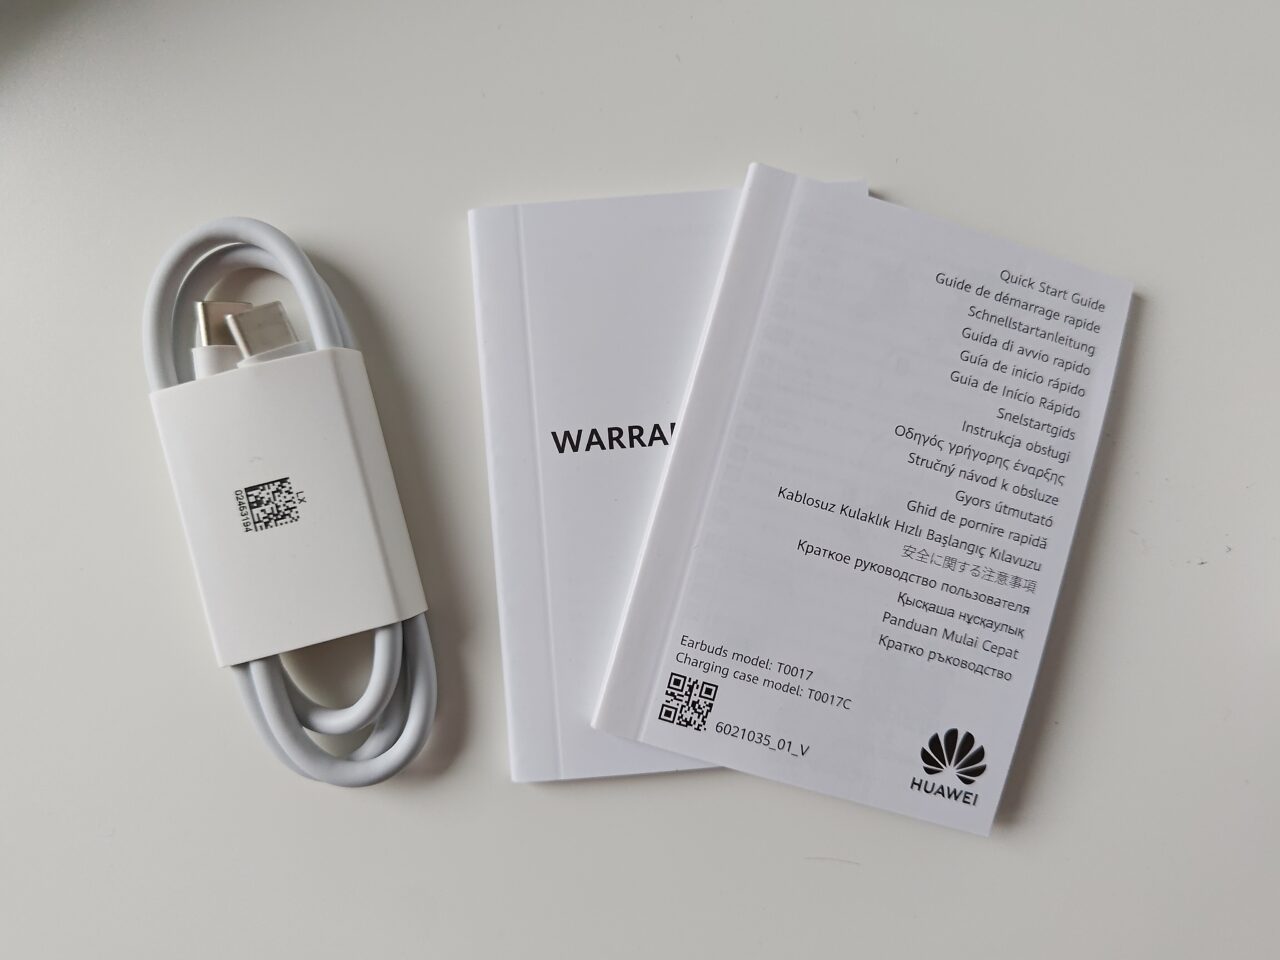 Biały kabel USB i instrukcje obsługi z gwarancją firmy Huawei na białym tle.